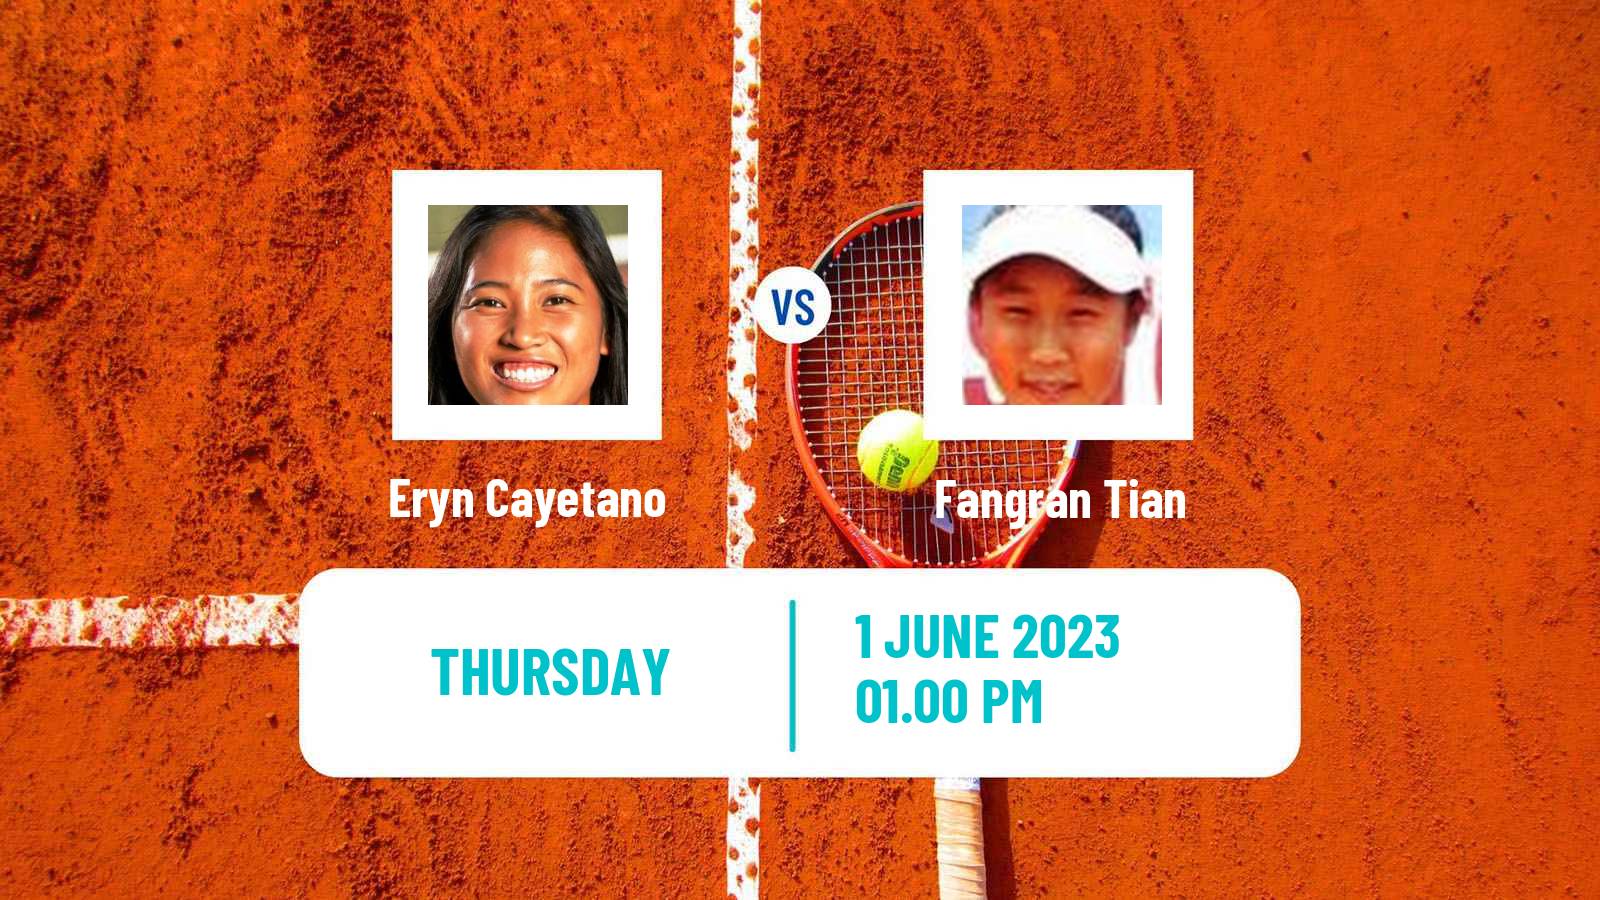 Tennis ITF W15 Rancho Santa Fe Ca Women Eryn Cayetano - Fangran Tian